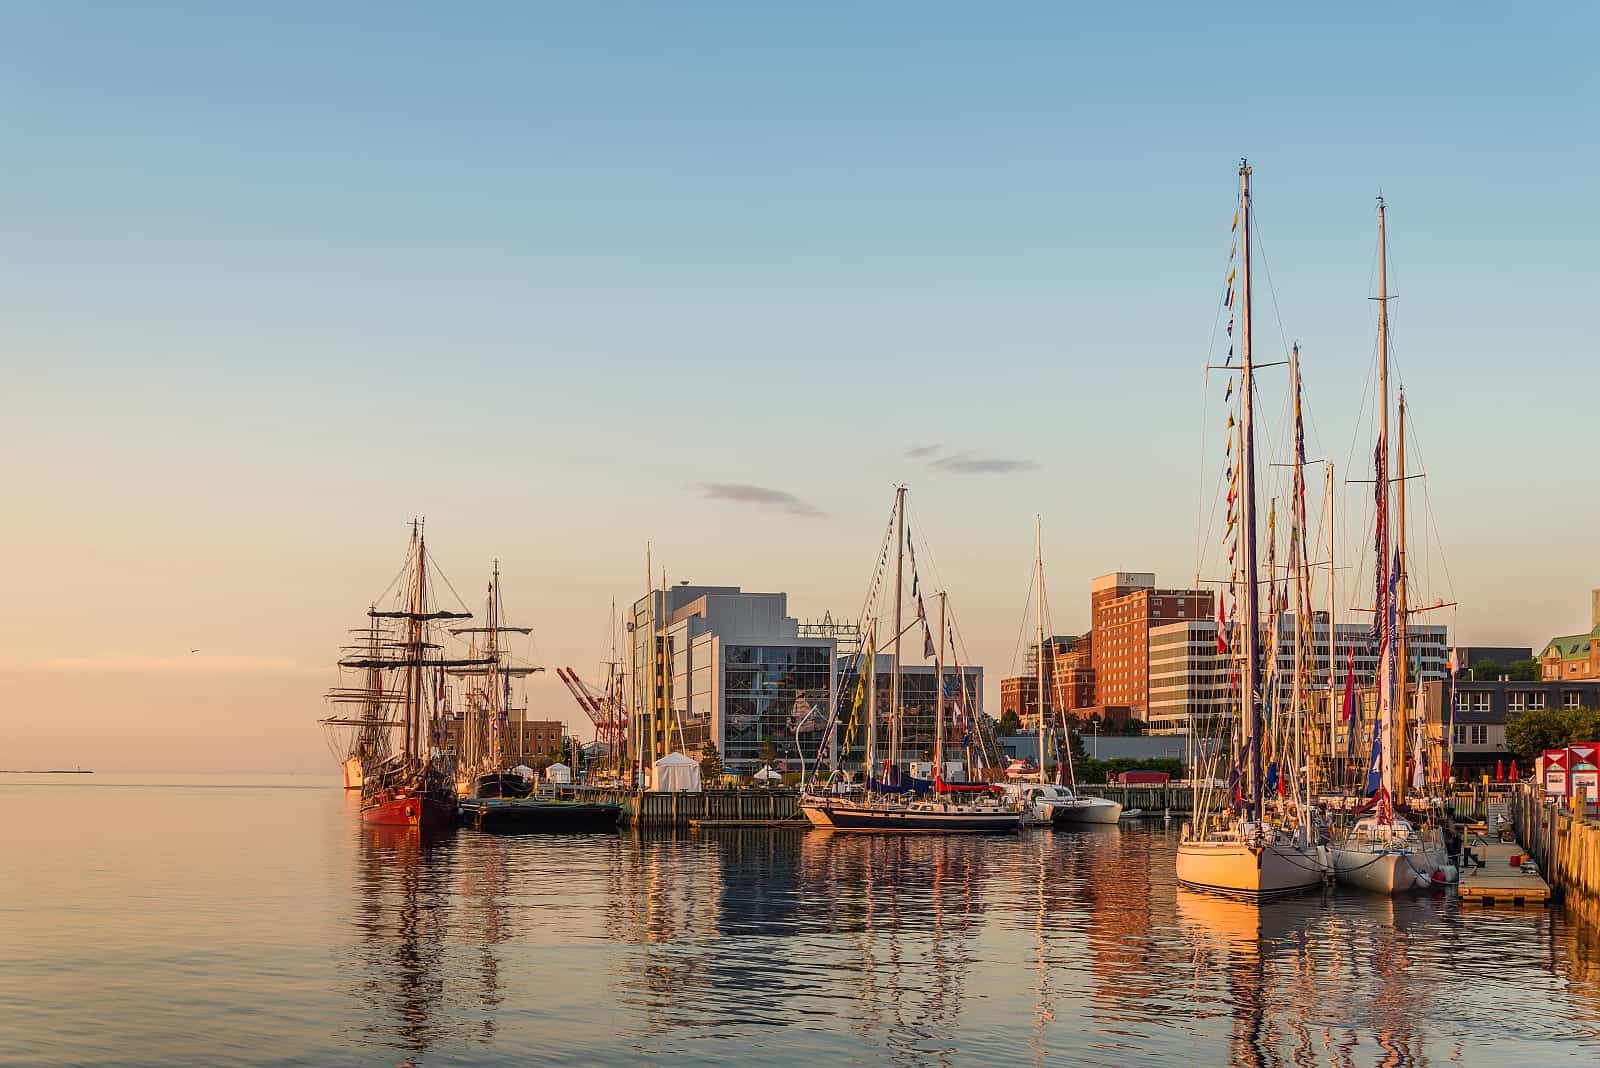 Der Hafen von Halifax, einer der größten Naturhäfen der Welt.